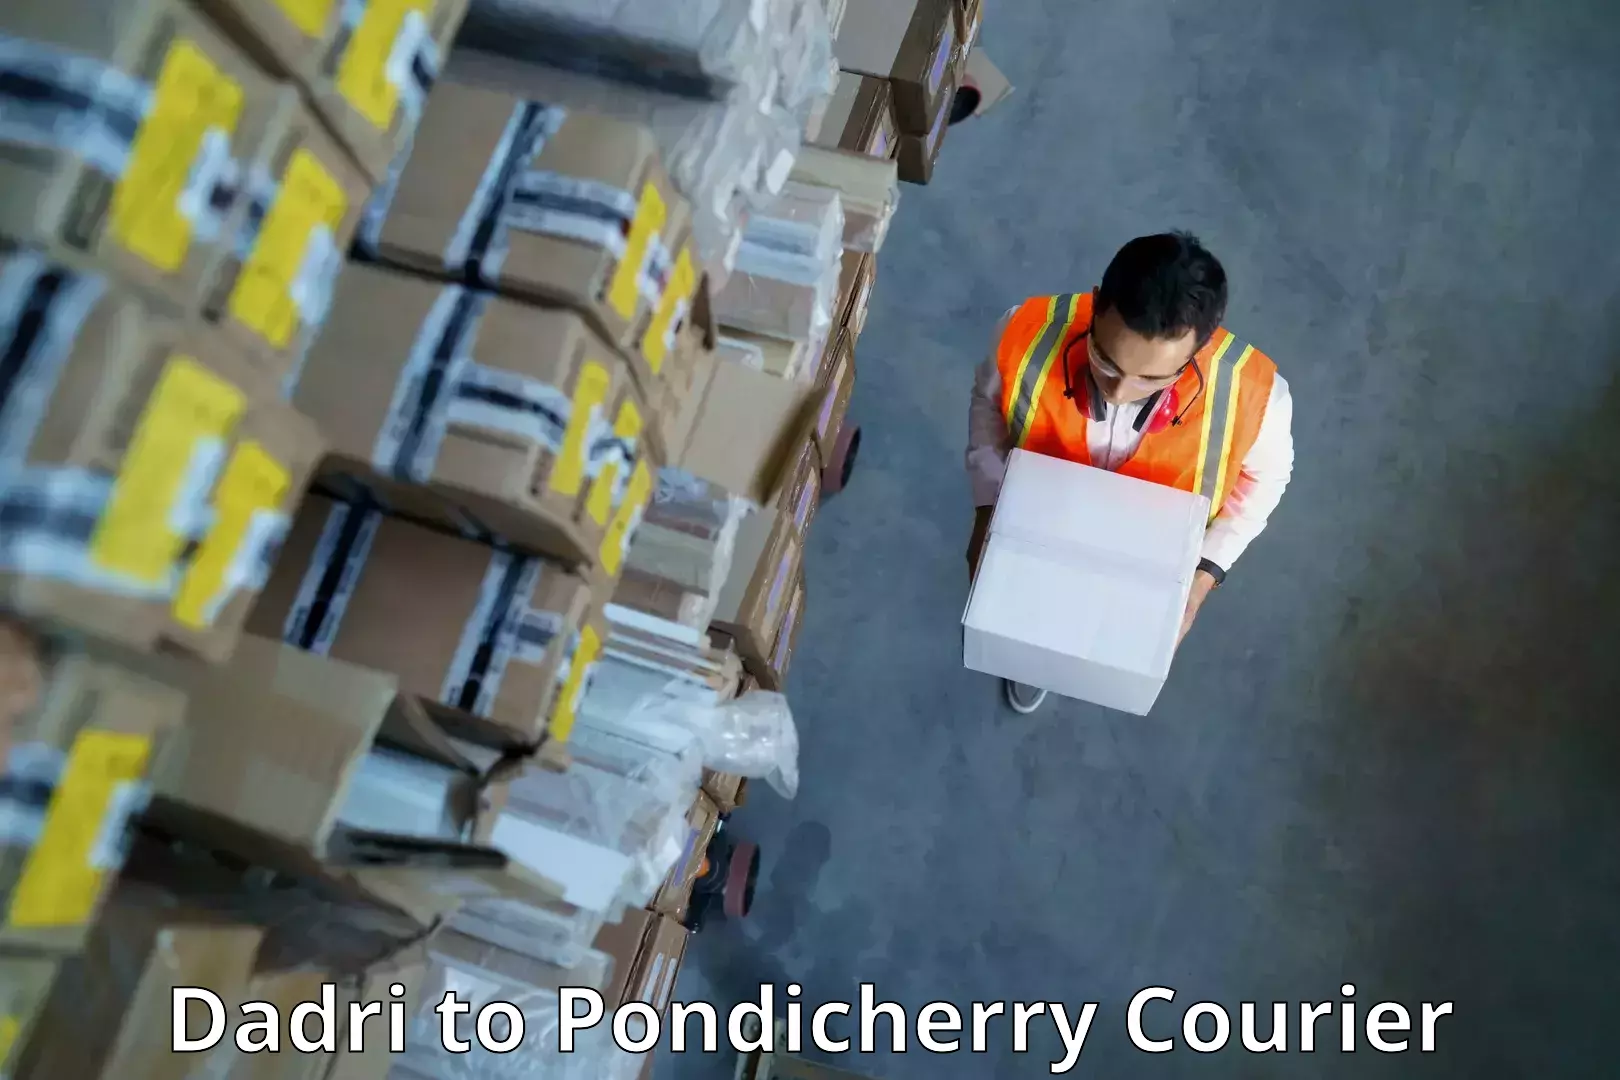 Global freight services Dadri to Pondicherry